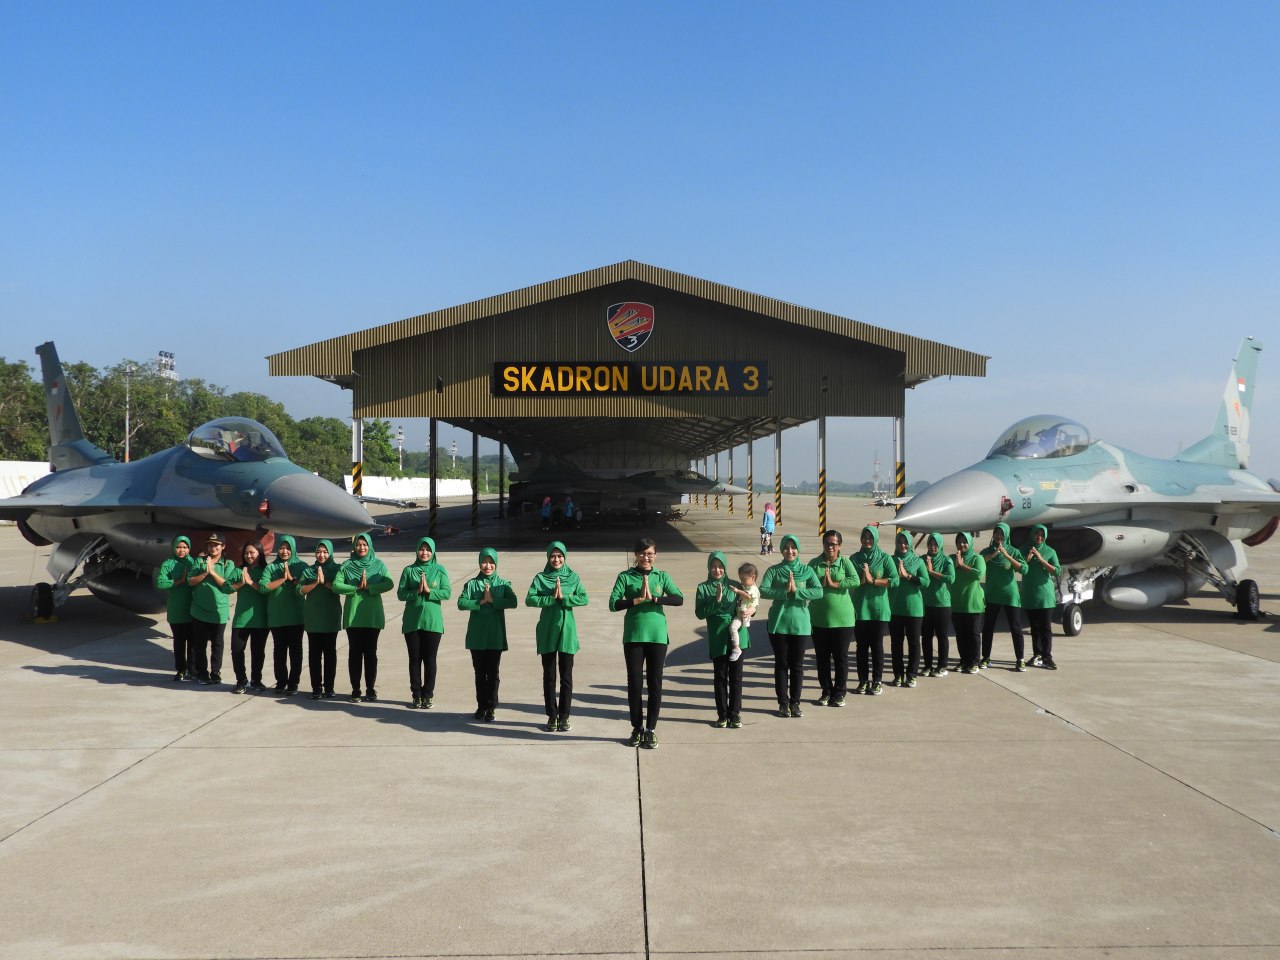 Hanggar Skuadron Udara Lanud Iswahjudi, Saksi Sinergitas Hijau dan Biru